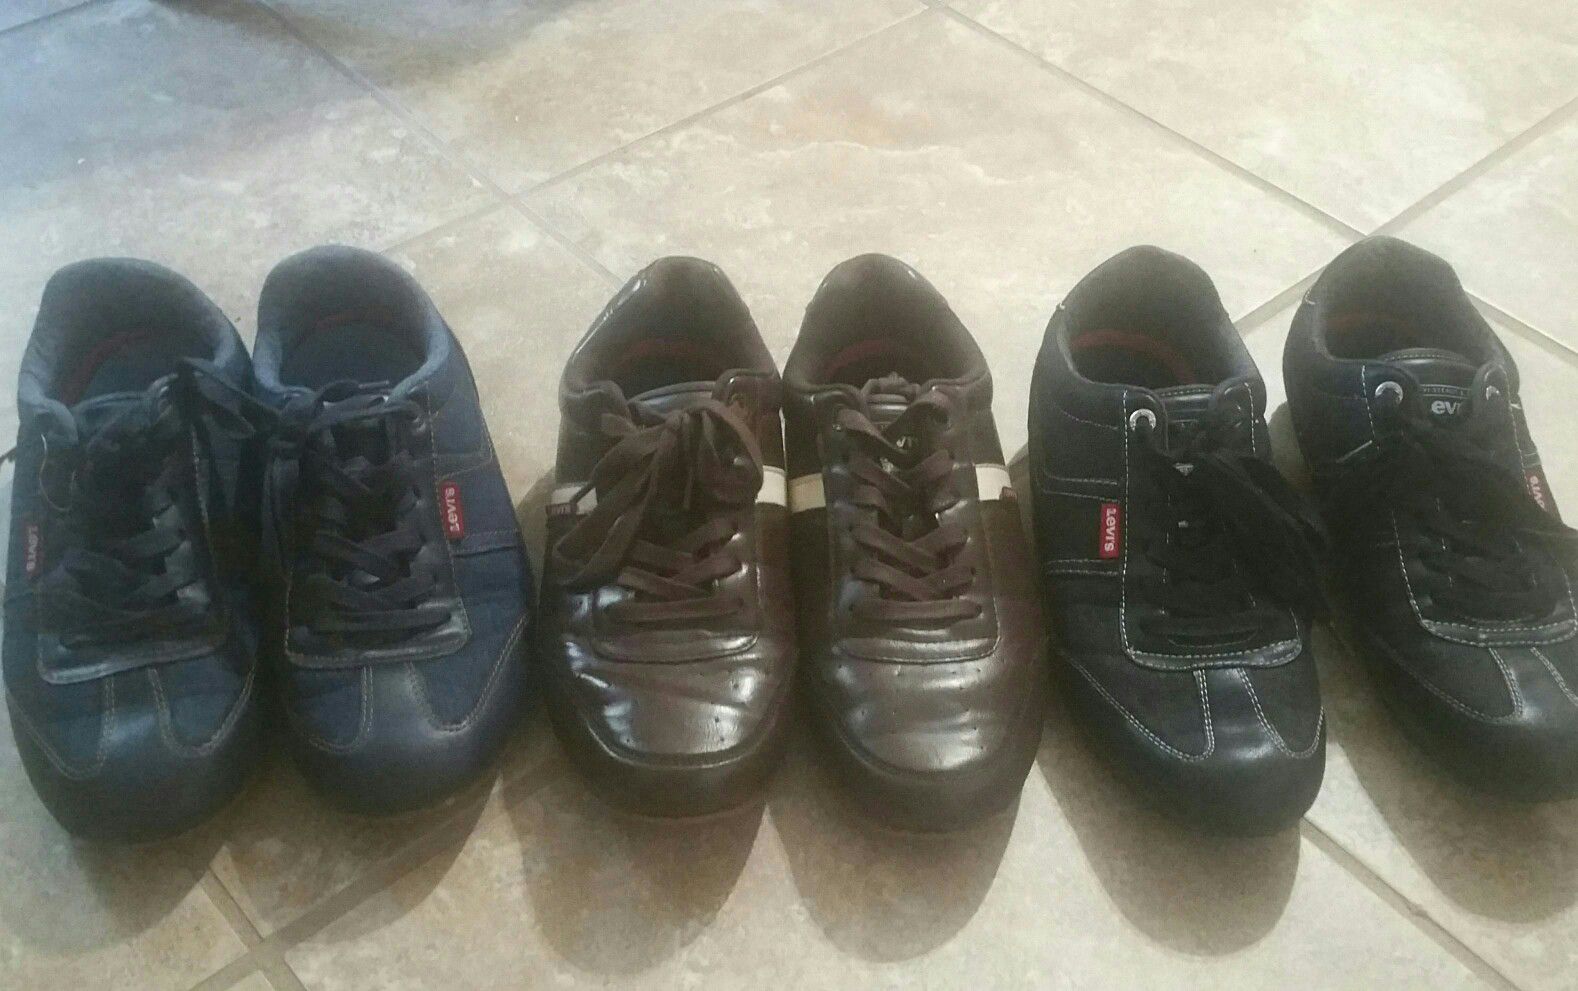 Original Levis shoes